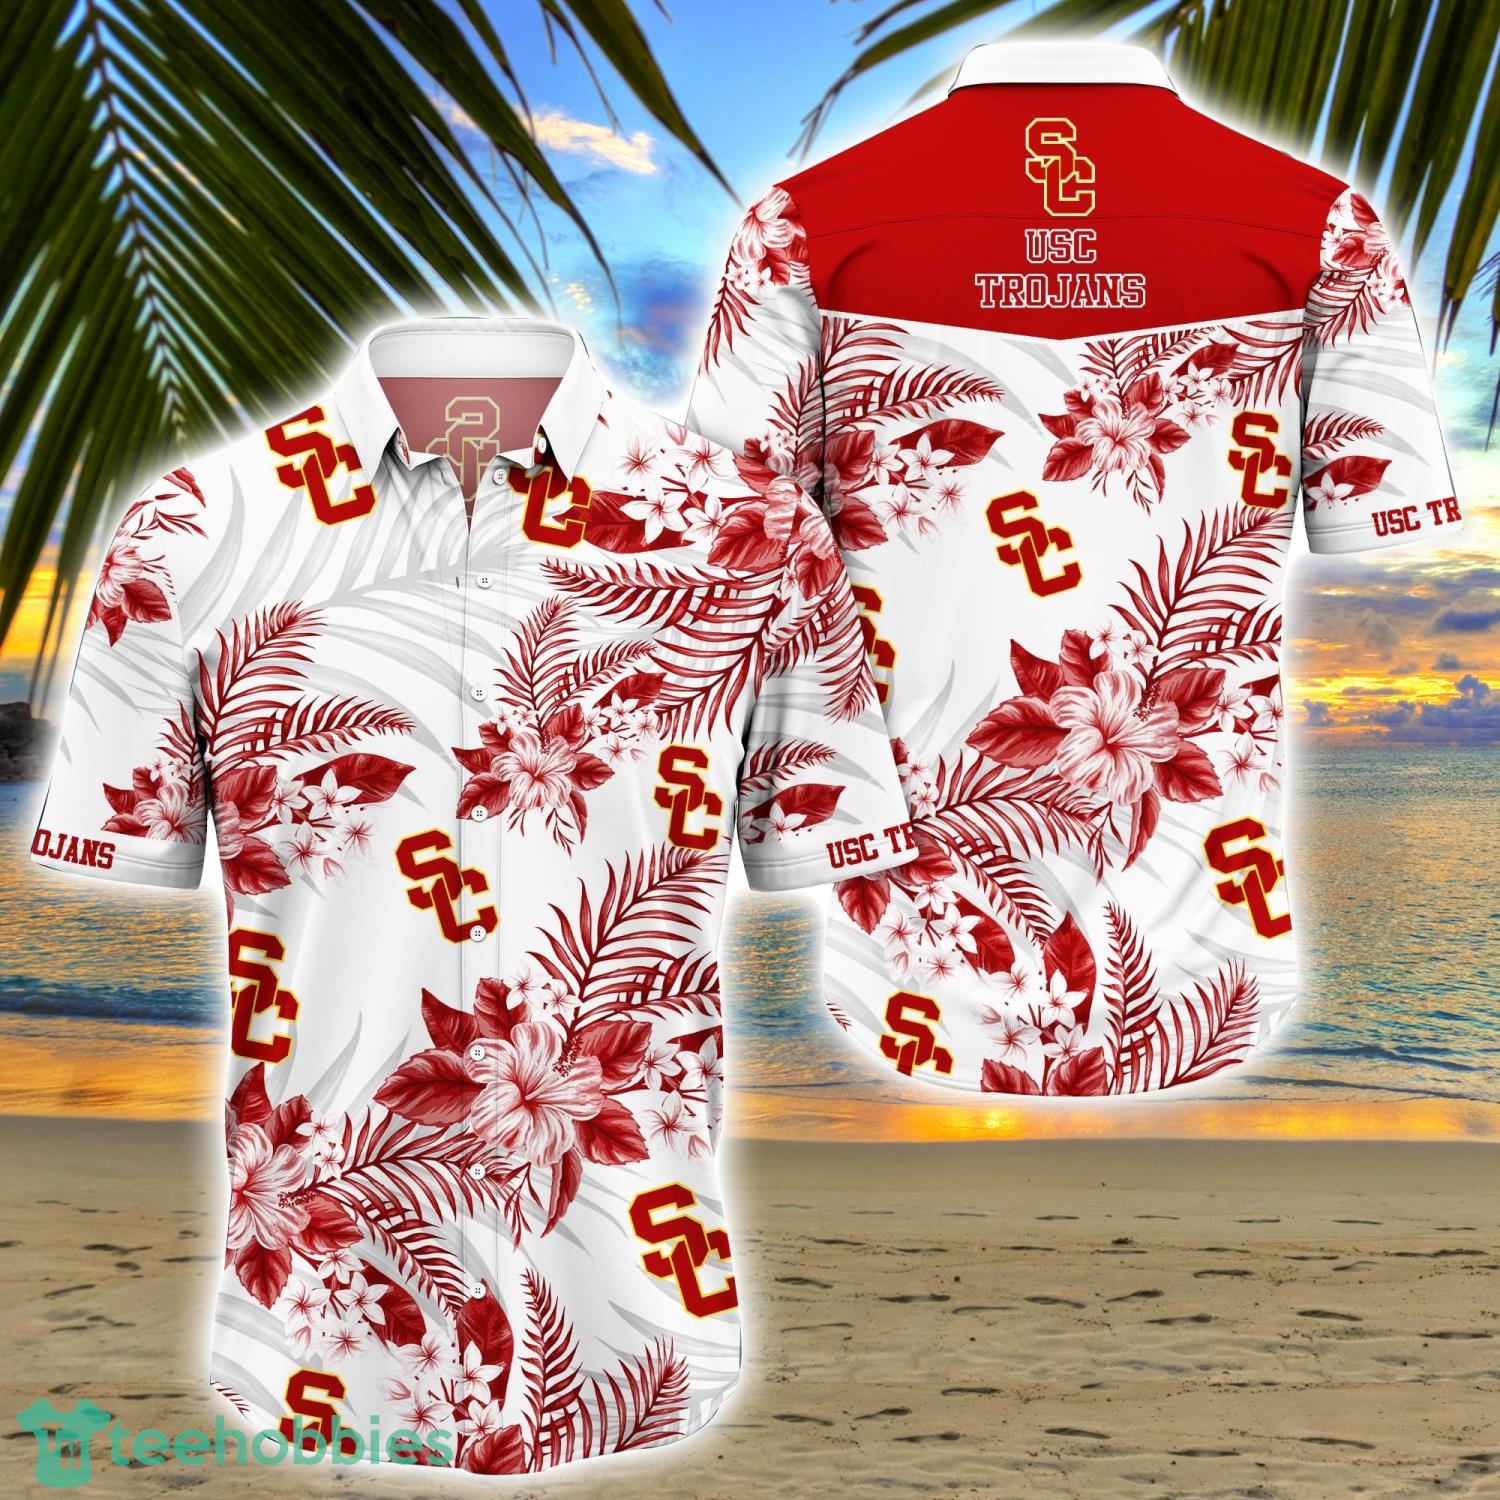 Los Angeles Dodgers Baseball Floral Big Flower Pattern Hawaiian Shirt And  Shorts Summer Vacation Gift